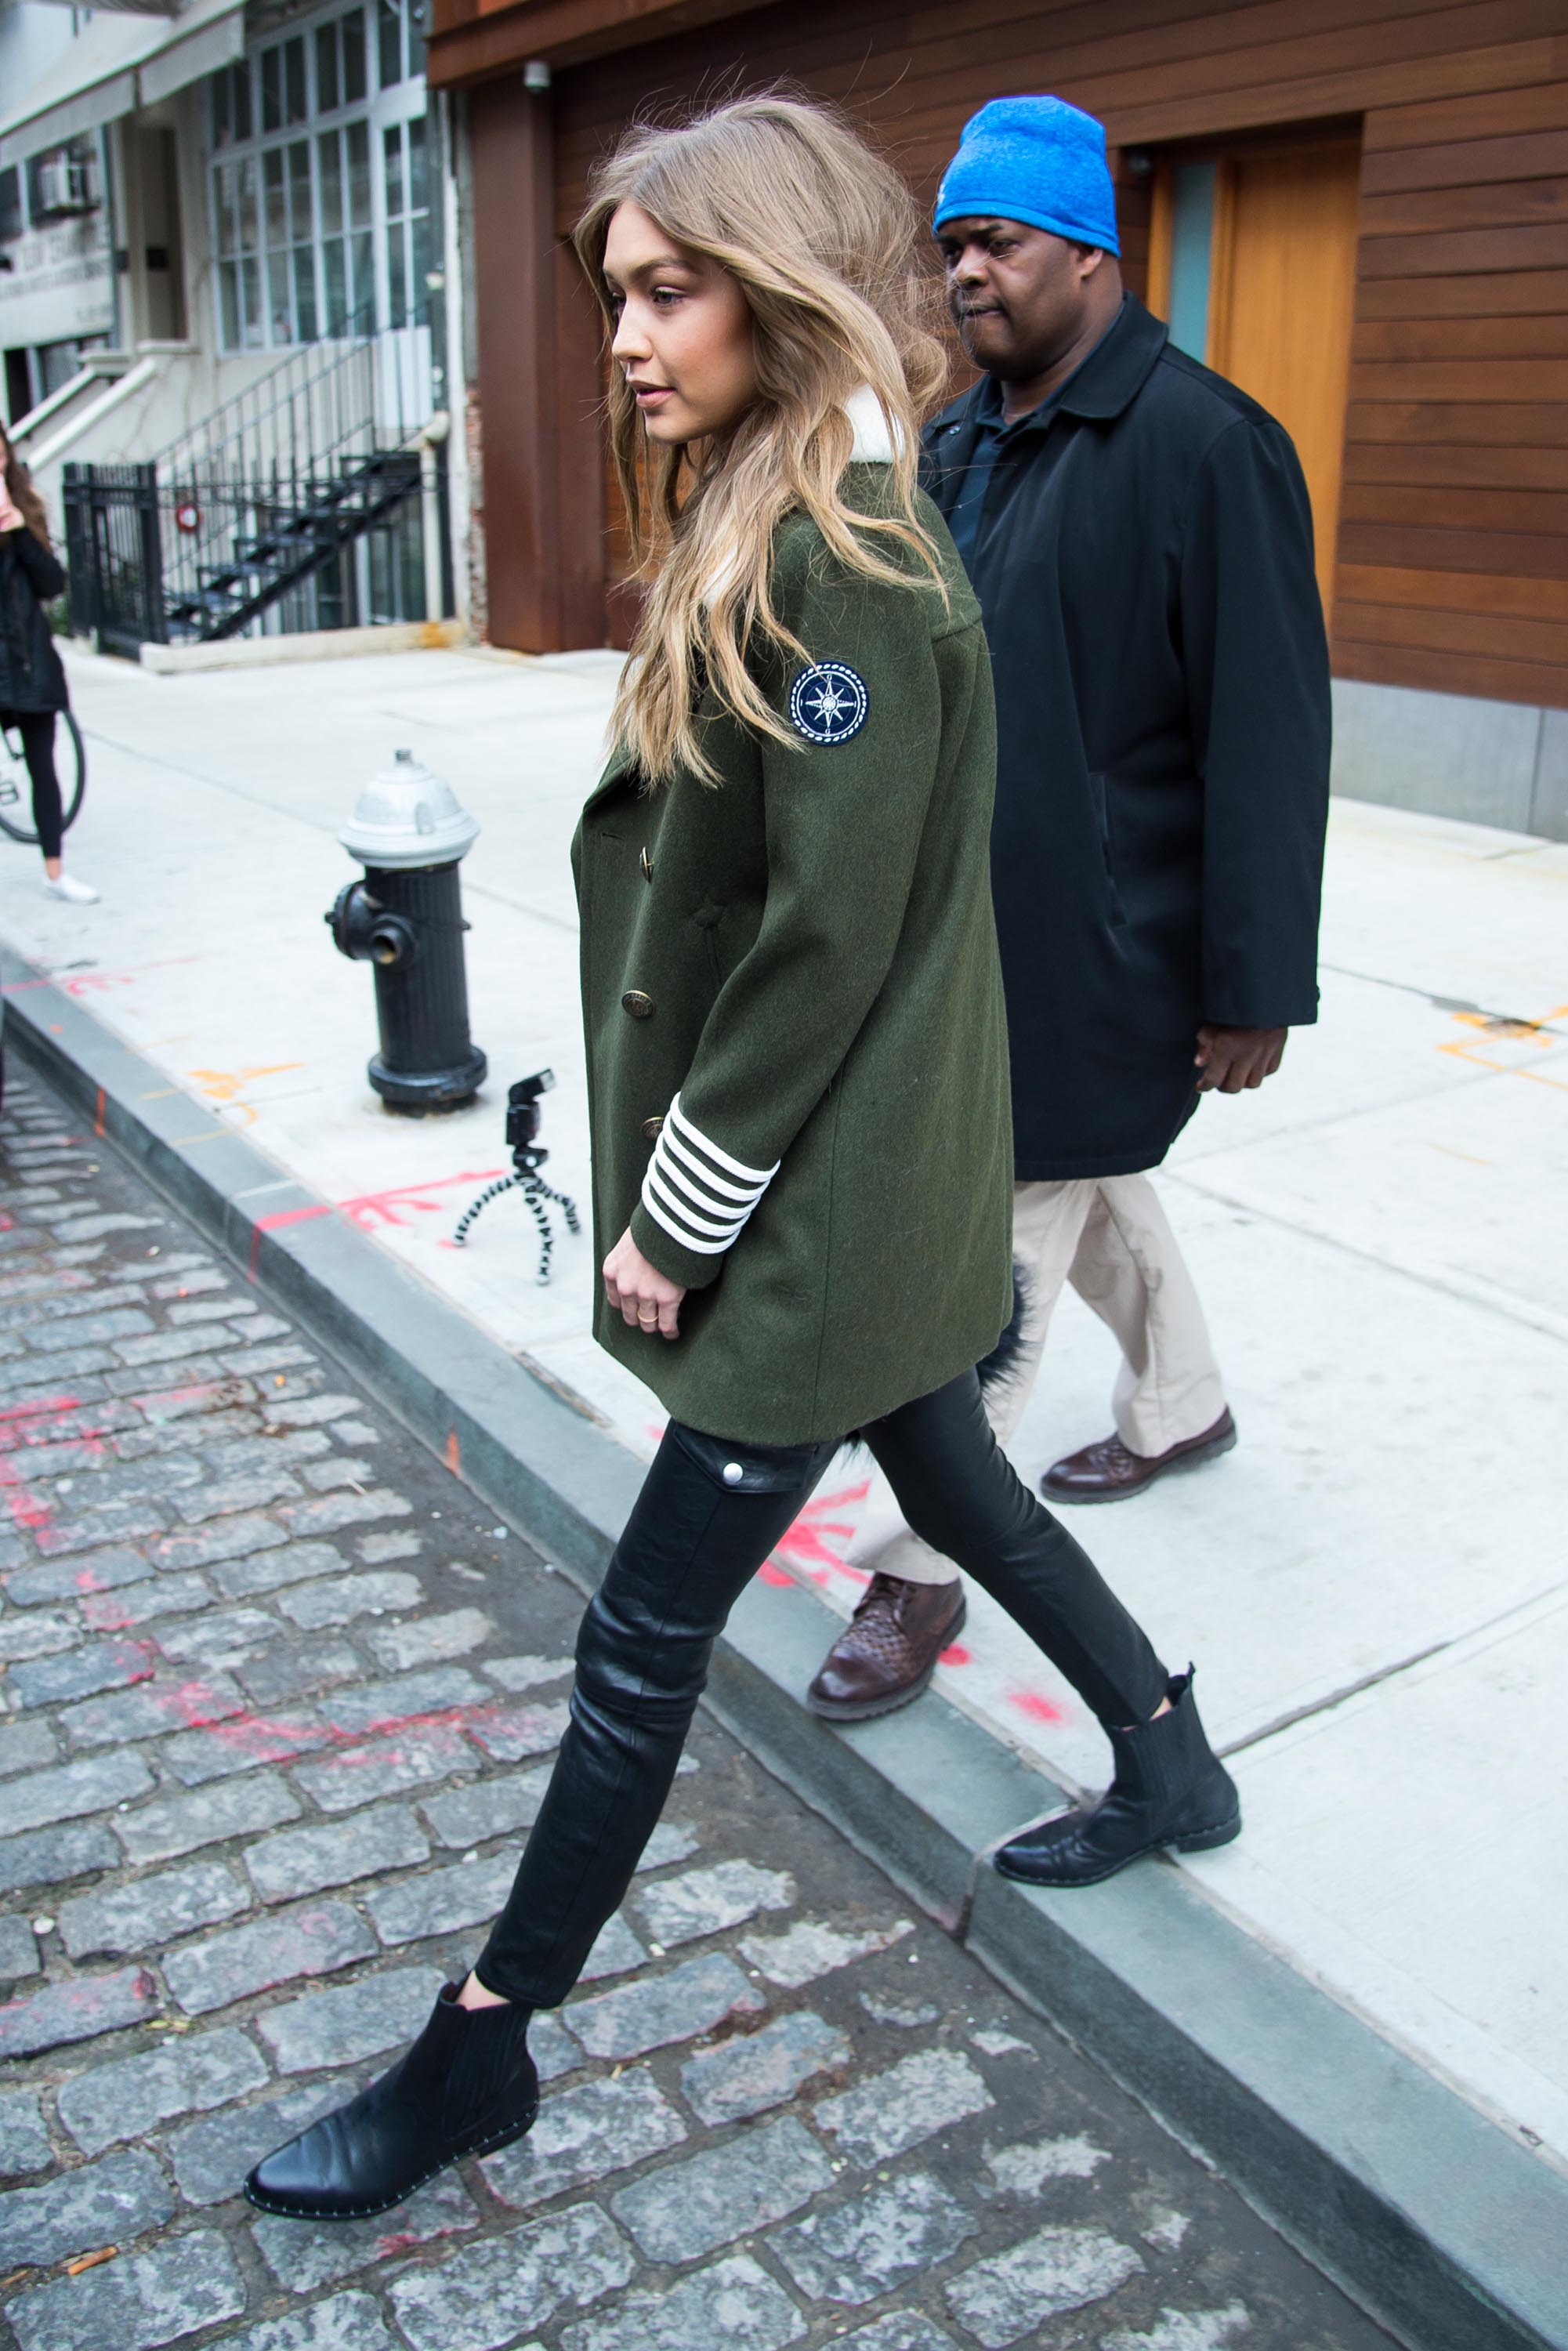 Gigi Hadid is seen in NYC